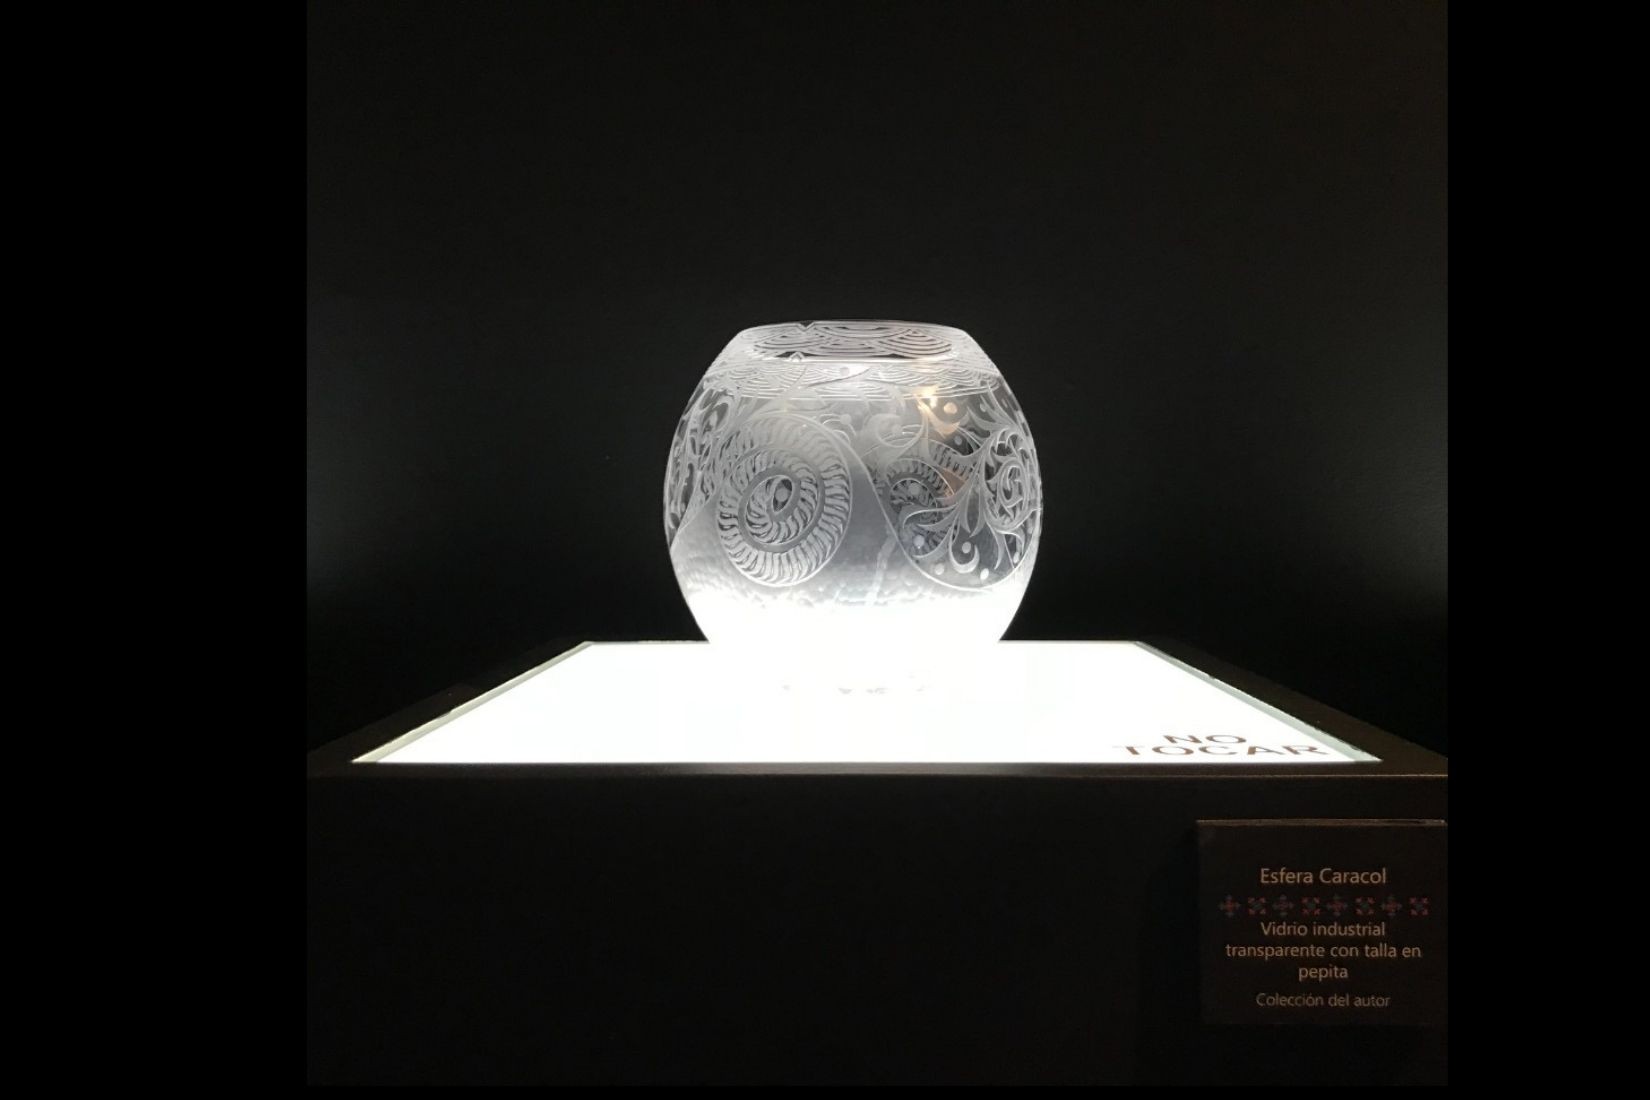 Esfera caracol. Vidrio industrial transparente con talla en pepita.  Artesano David Guillén Peña. CDMX. Col. del autor. (Foto: MAP).